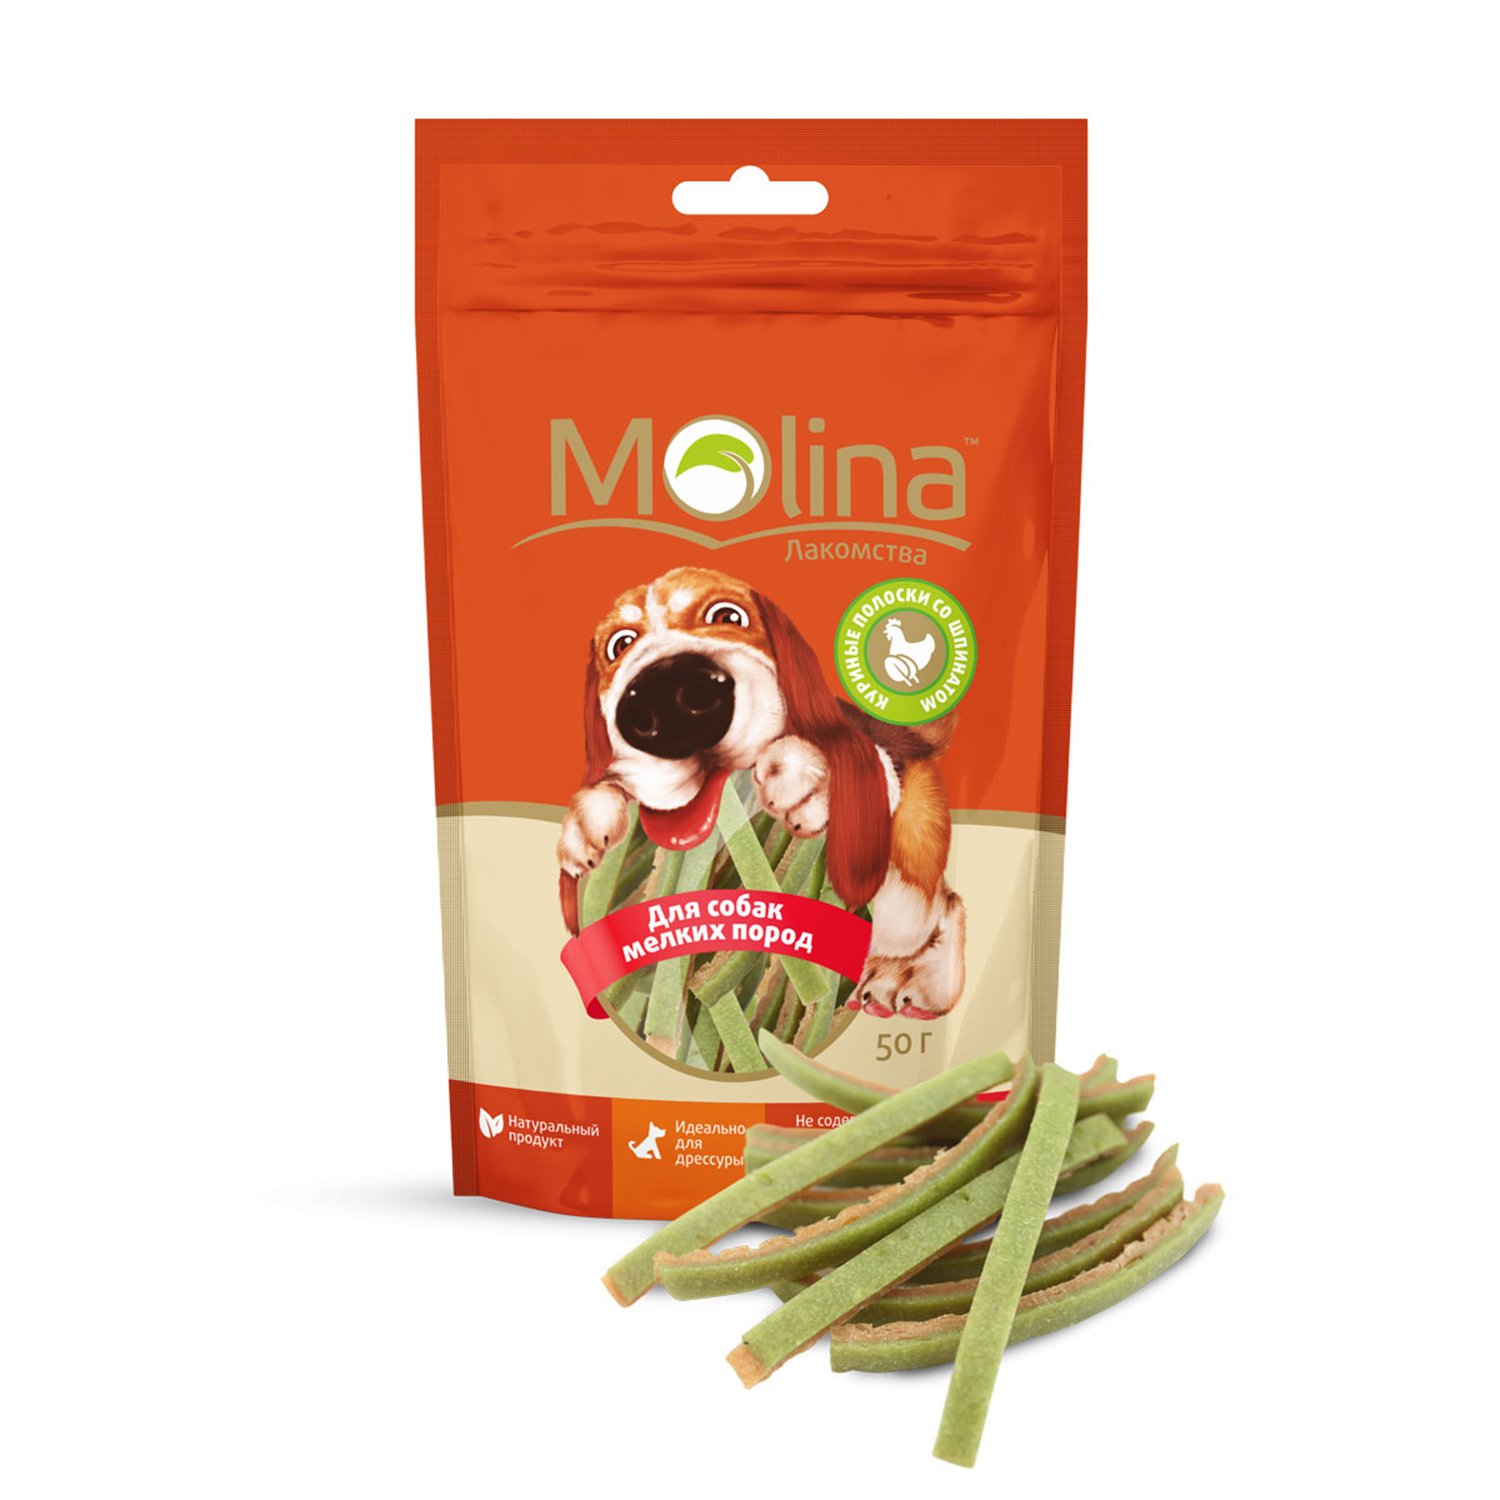 Молина 50гр - Куриные полоски со шпинатом, лакомство для мелких собак (Molina)